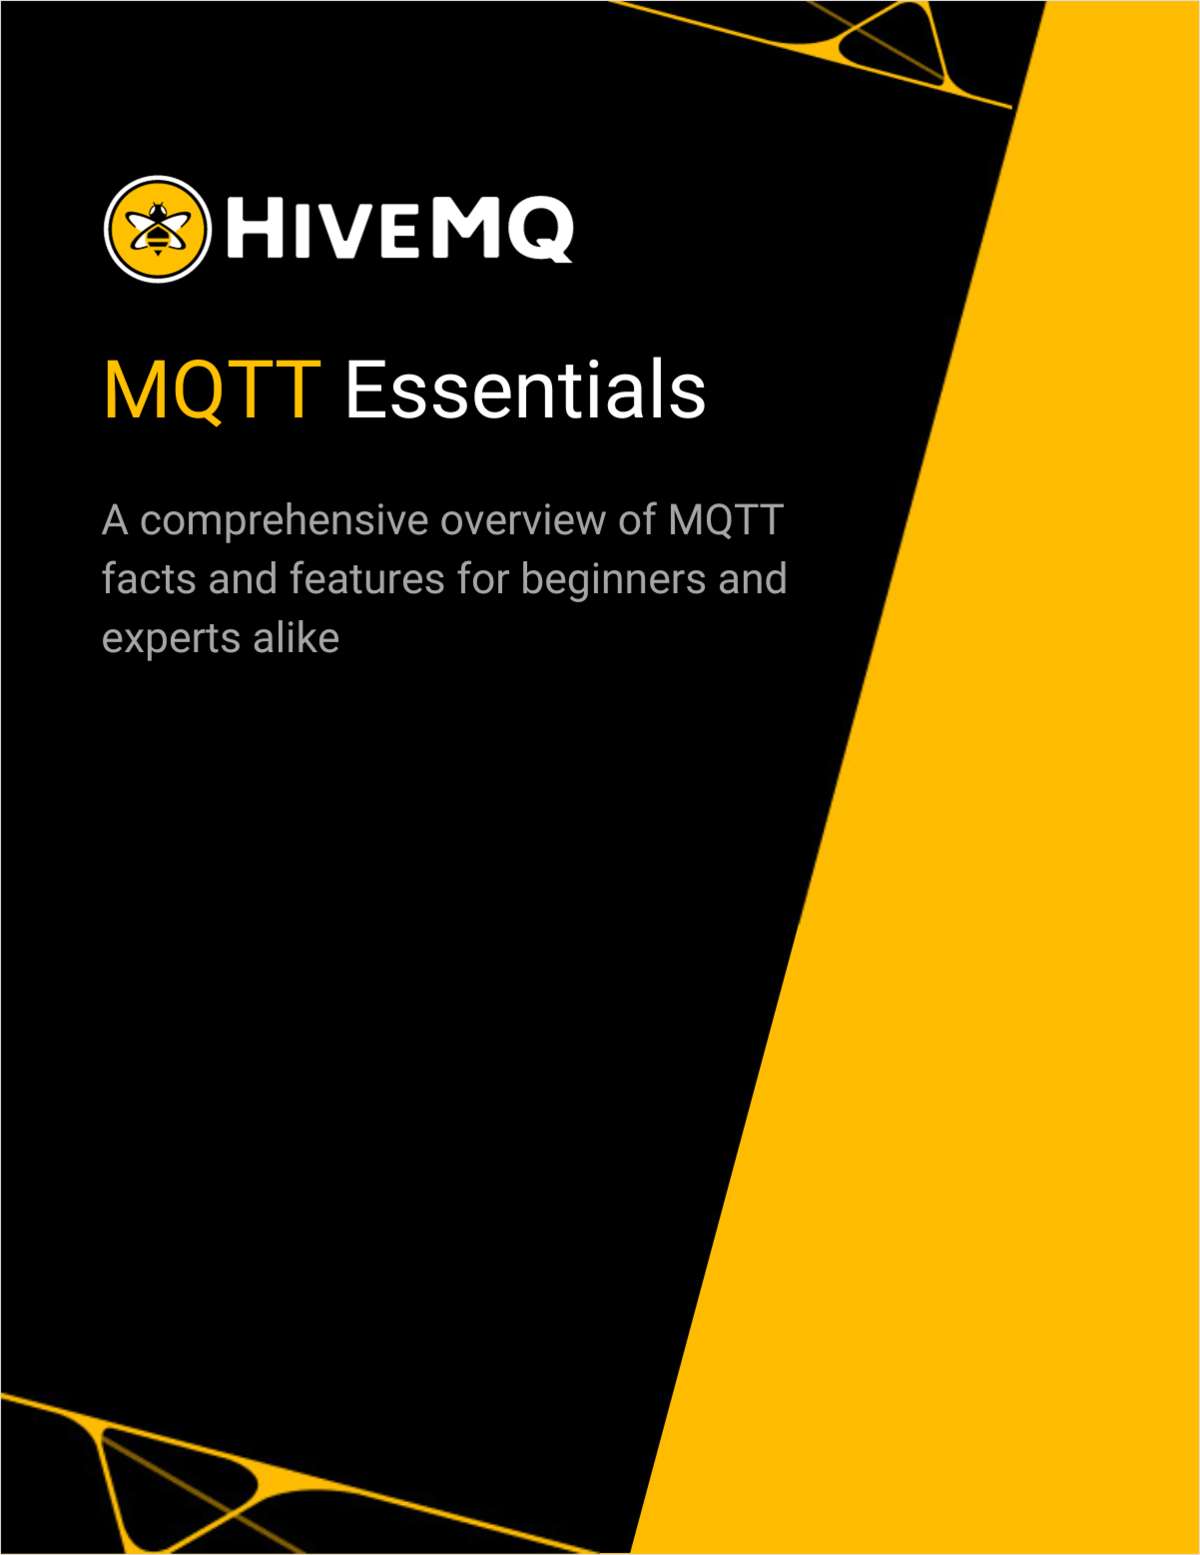 MQTT Essentials